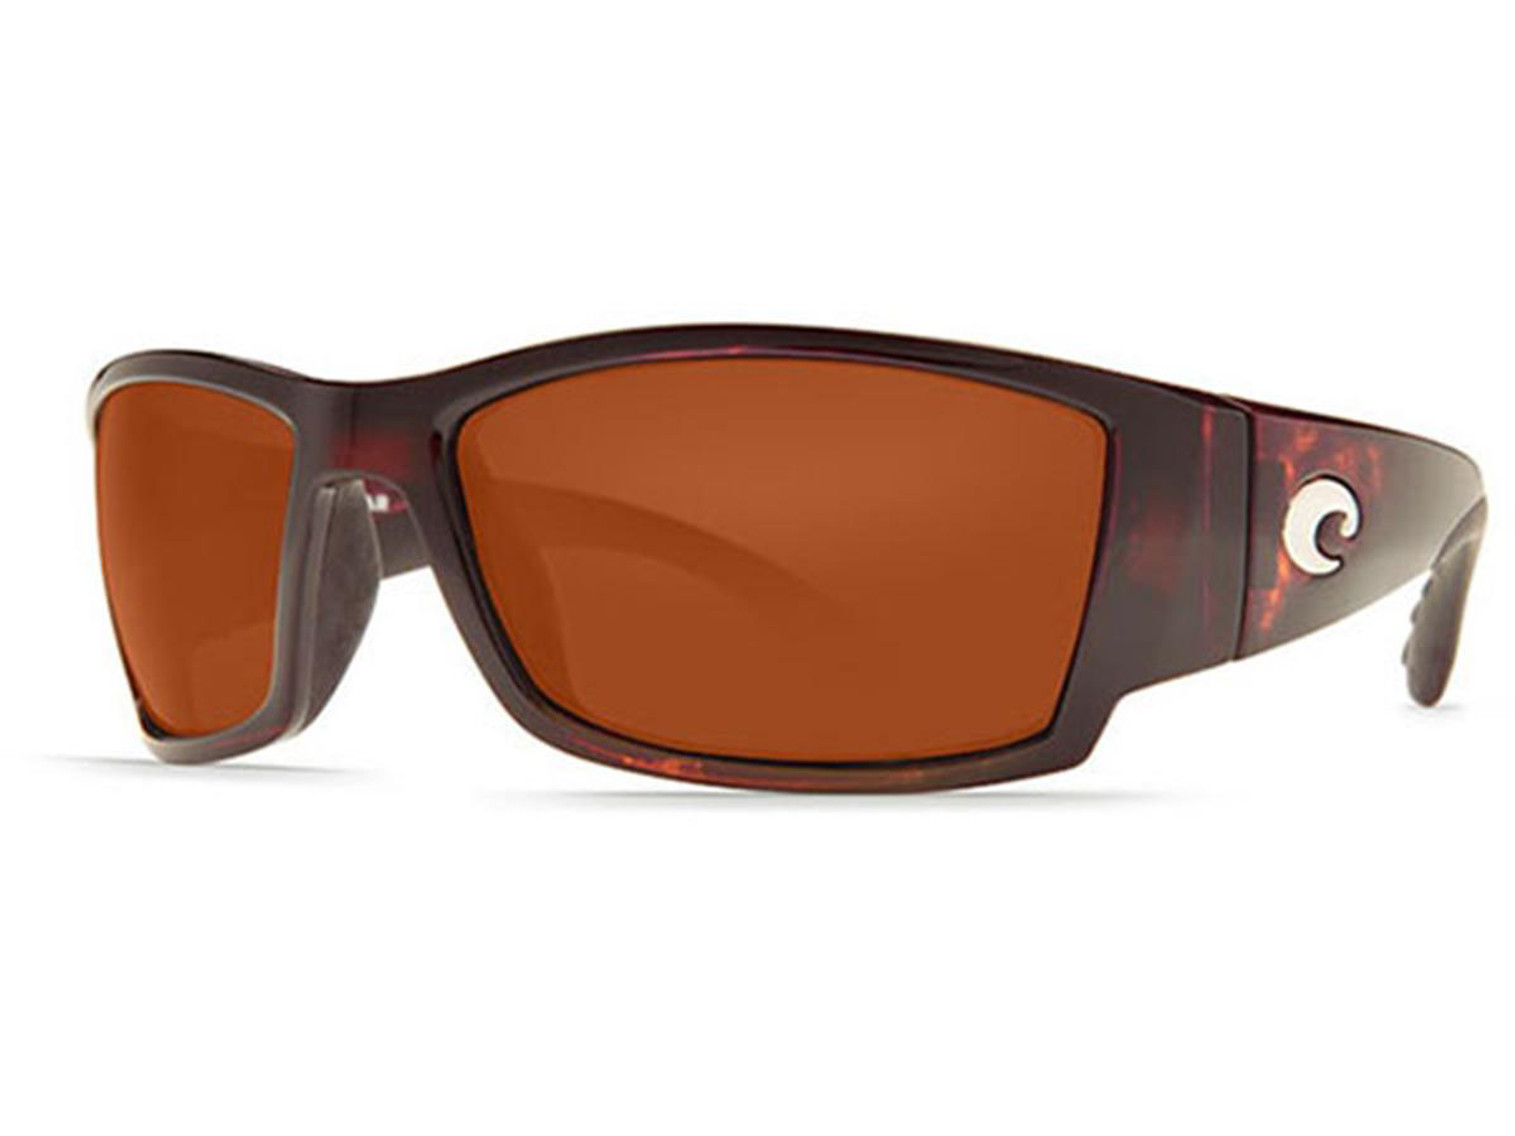 Costa Del Mar - Corbina Polarized Sunglasses - Tort / 580p Copper